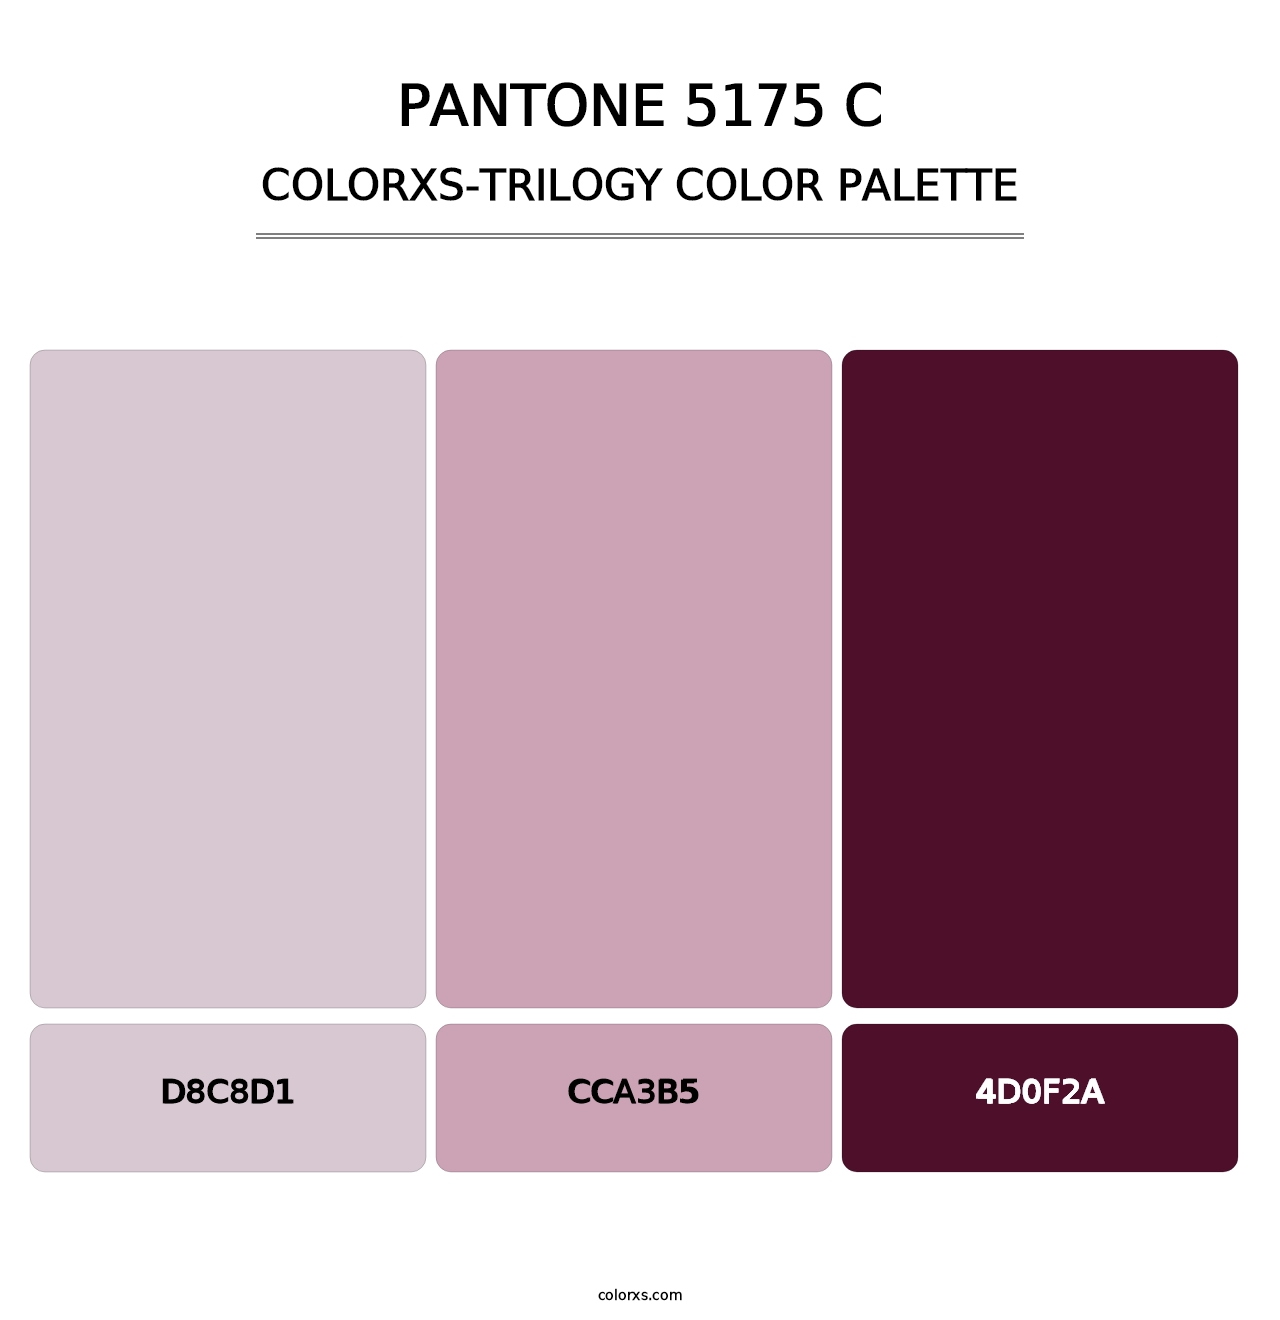 PANTONE 5175 C - Colorxs Trilogy Palette